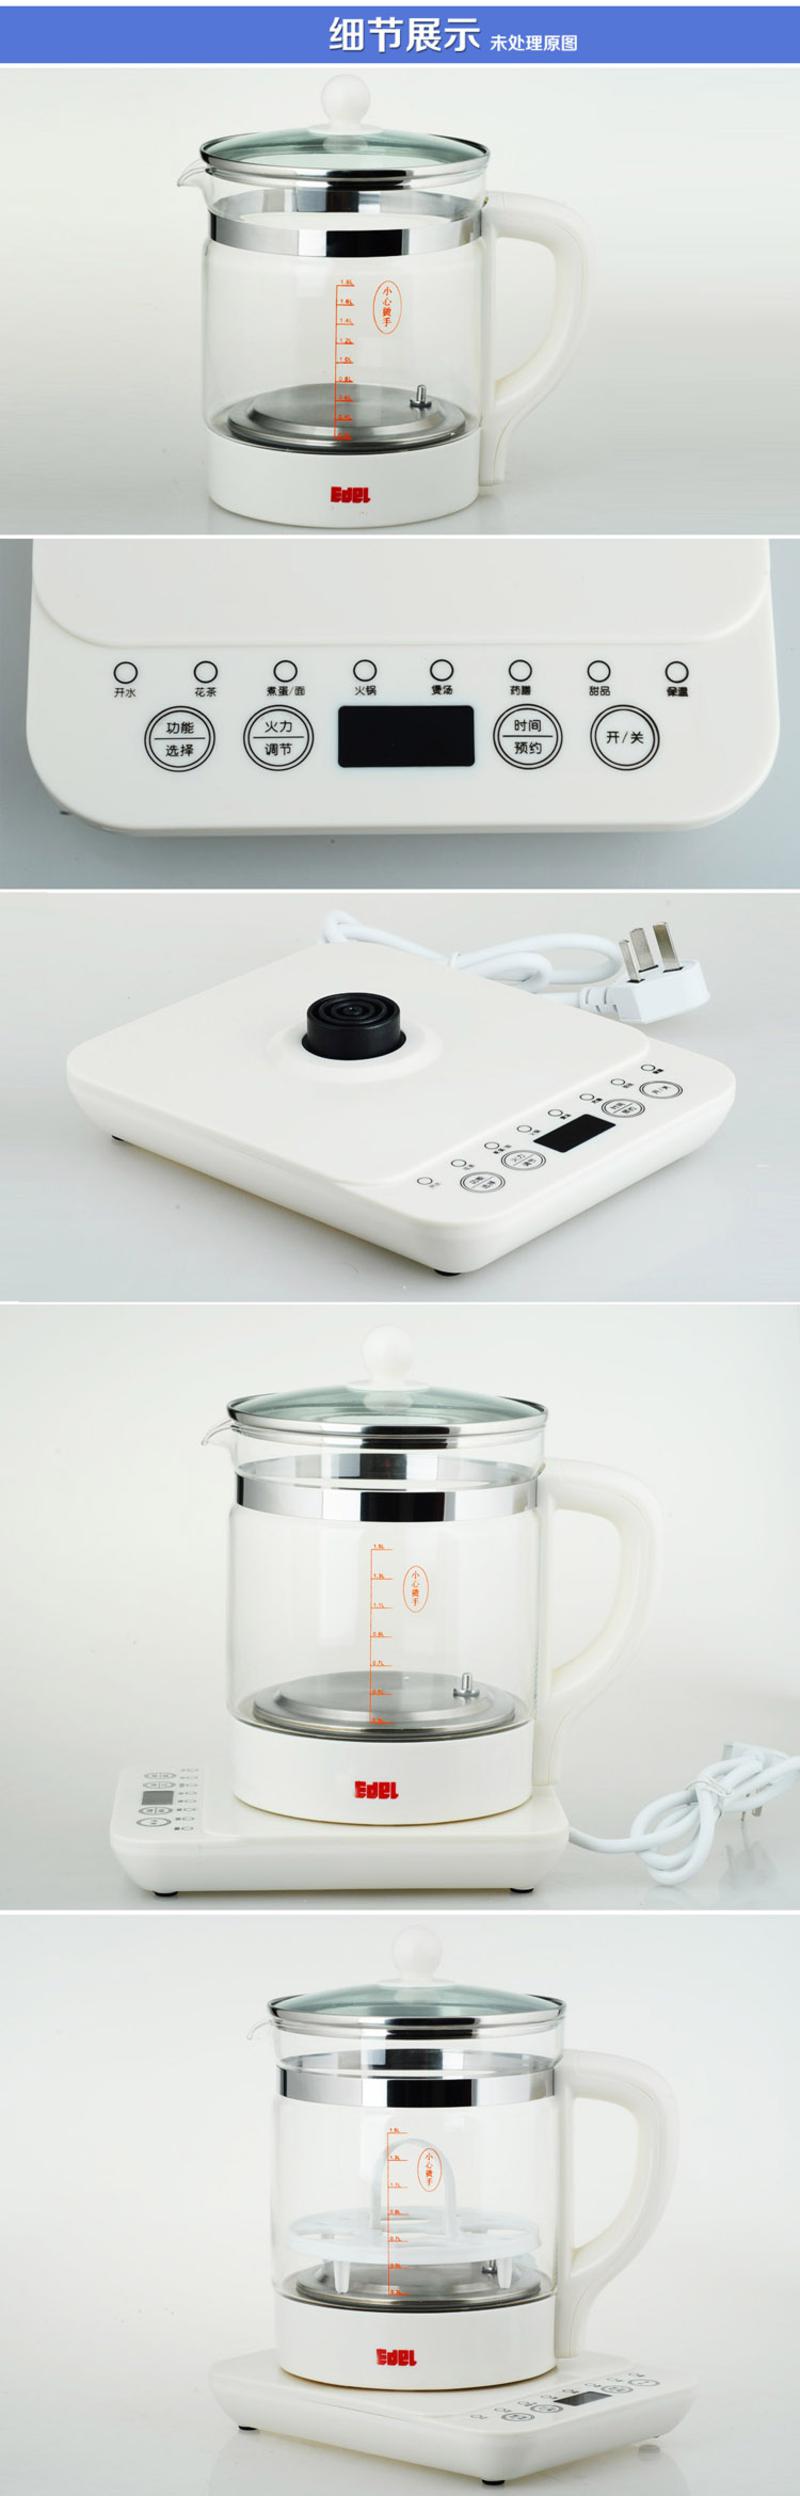 宜阁(EDEI) 1.5L多功能玻璃养生壶802 新型热水壶煎药壶分体煲汤煲